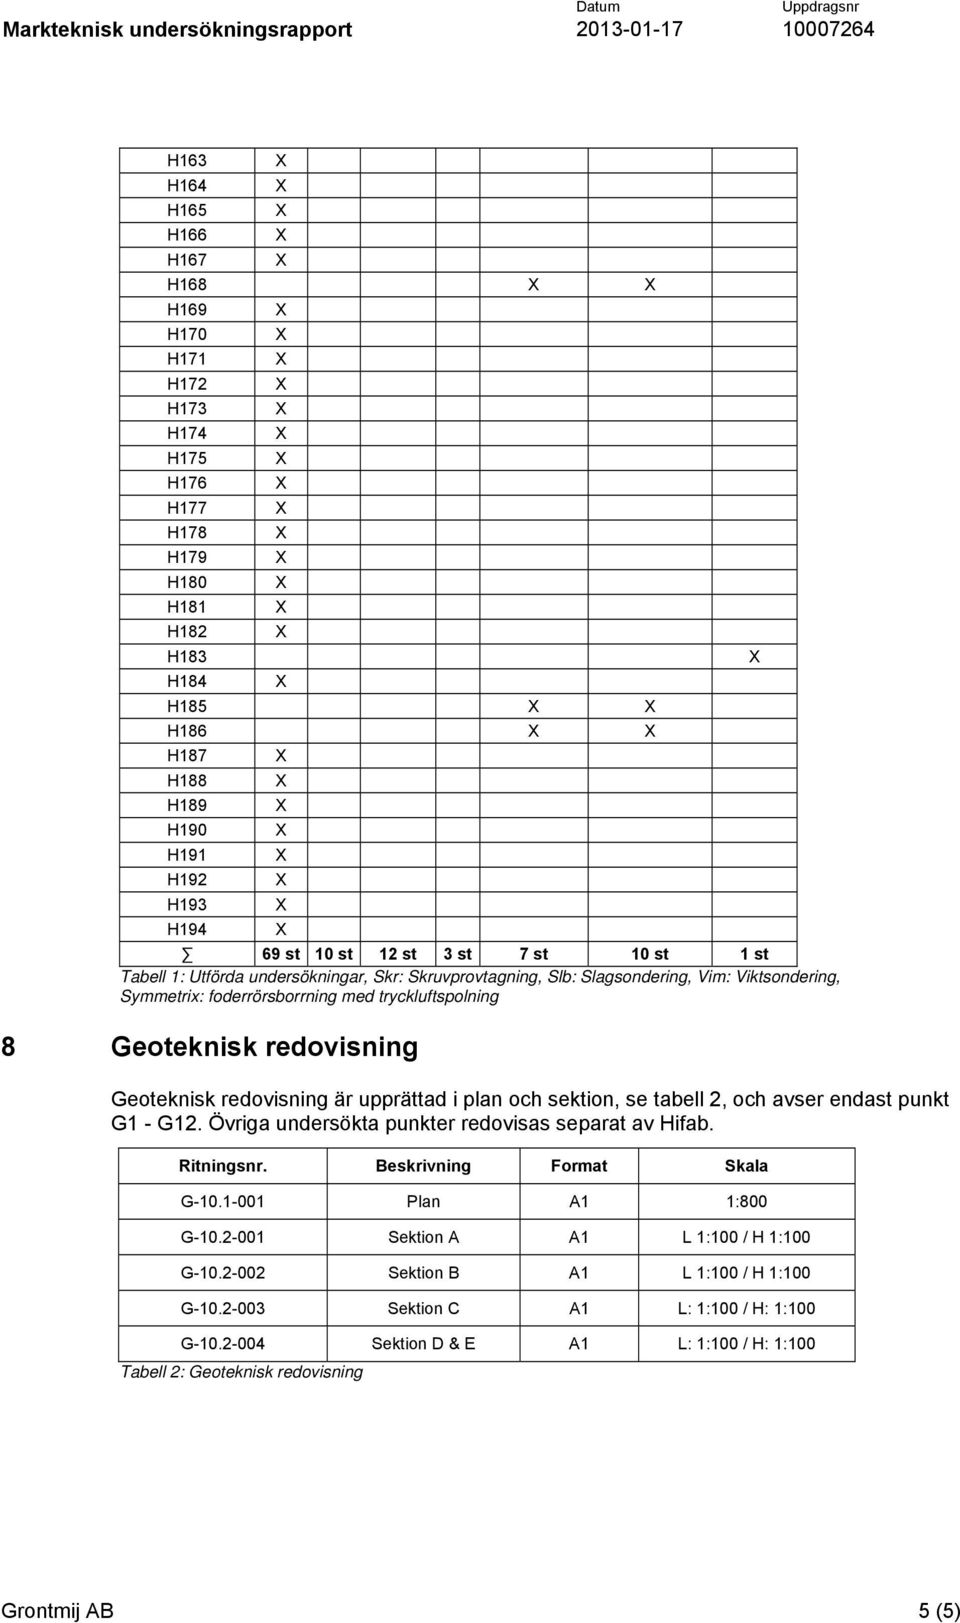 upprättad i plan och sektion, se tabell 2, och avser endast punkt G1 - G12. Övriga undersökta punkter redovisas separat av Hifab. Ritningsnr. Beskrivning Format Skala G-10.1-001 Plan A1 1:800 G-10.